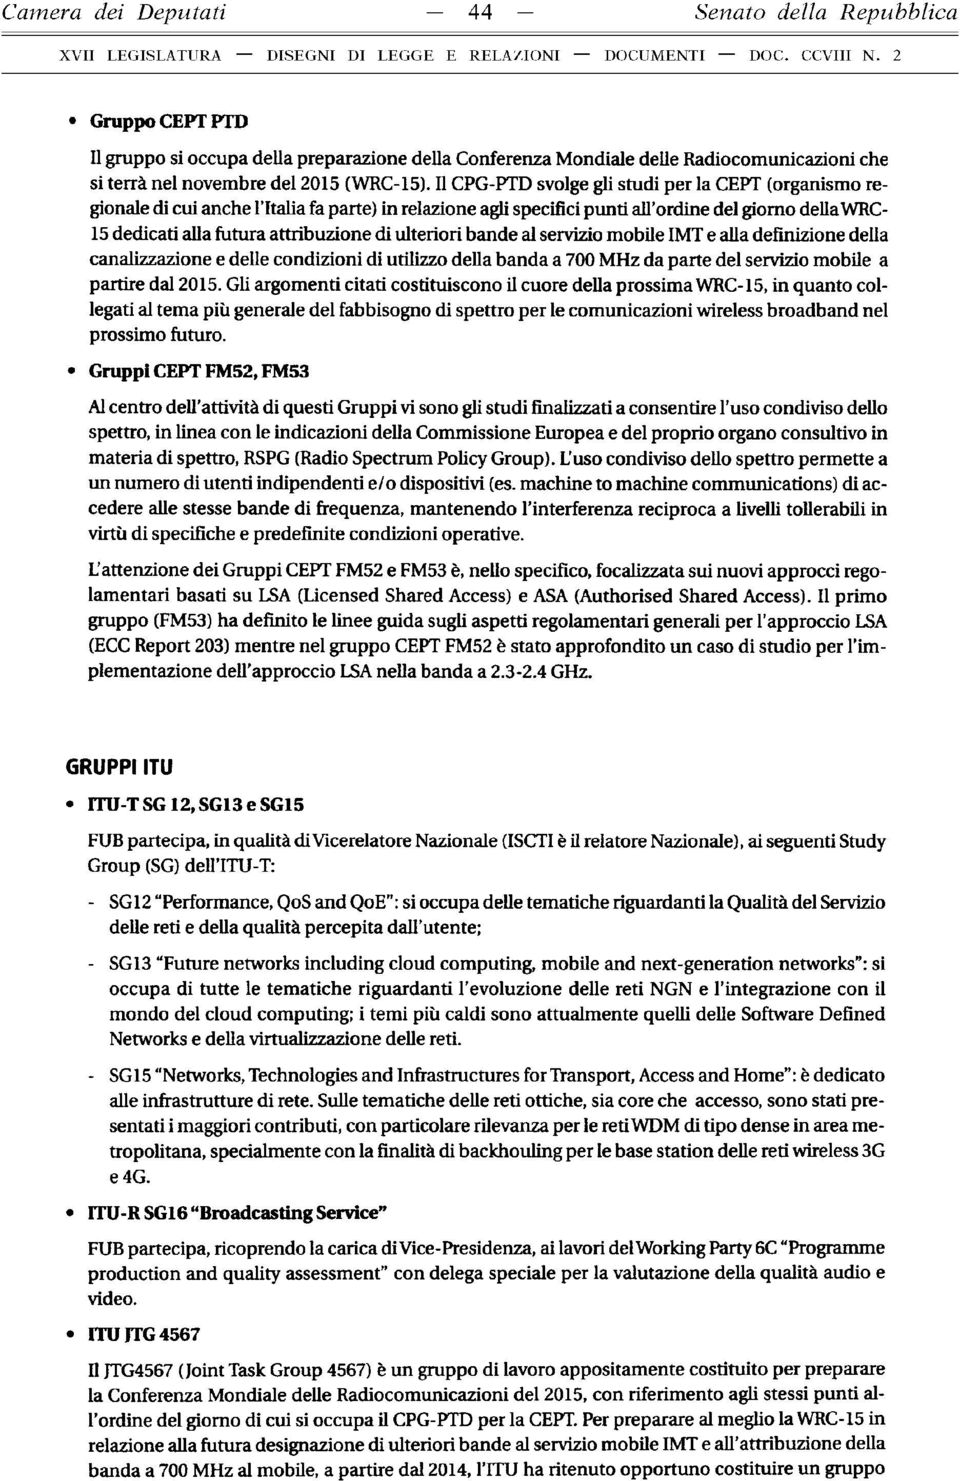 Il CPG-PTD svolge gli studi per la CEPT (organismo regionale di cui anche l Italia fa parte) in relazione agli specifici punti all ordine del giorno della WRC- 15 dedicati alla futura attribuzione di